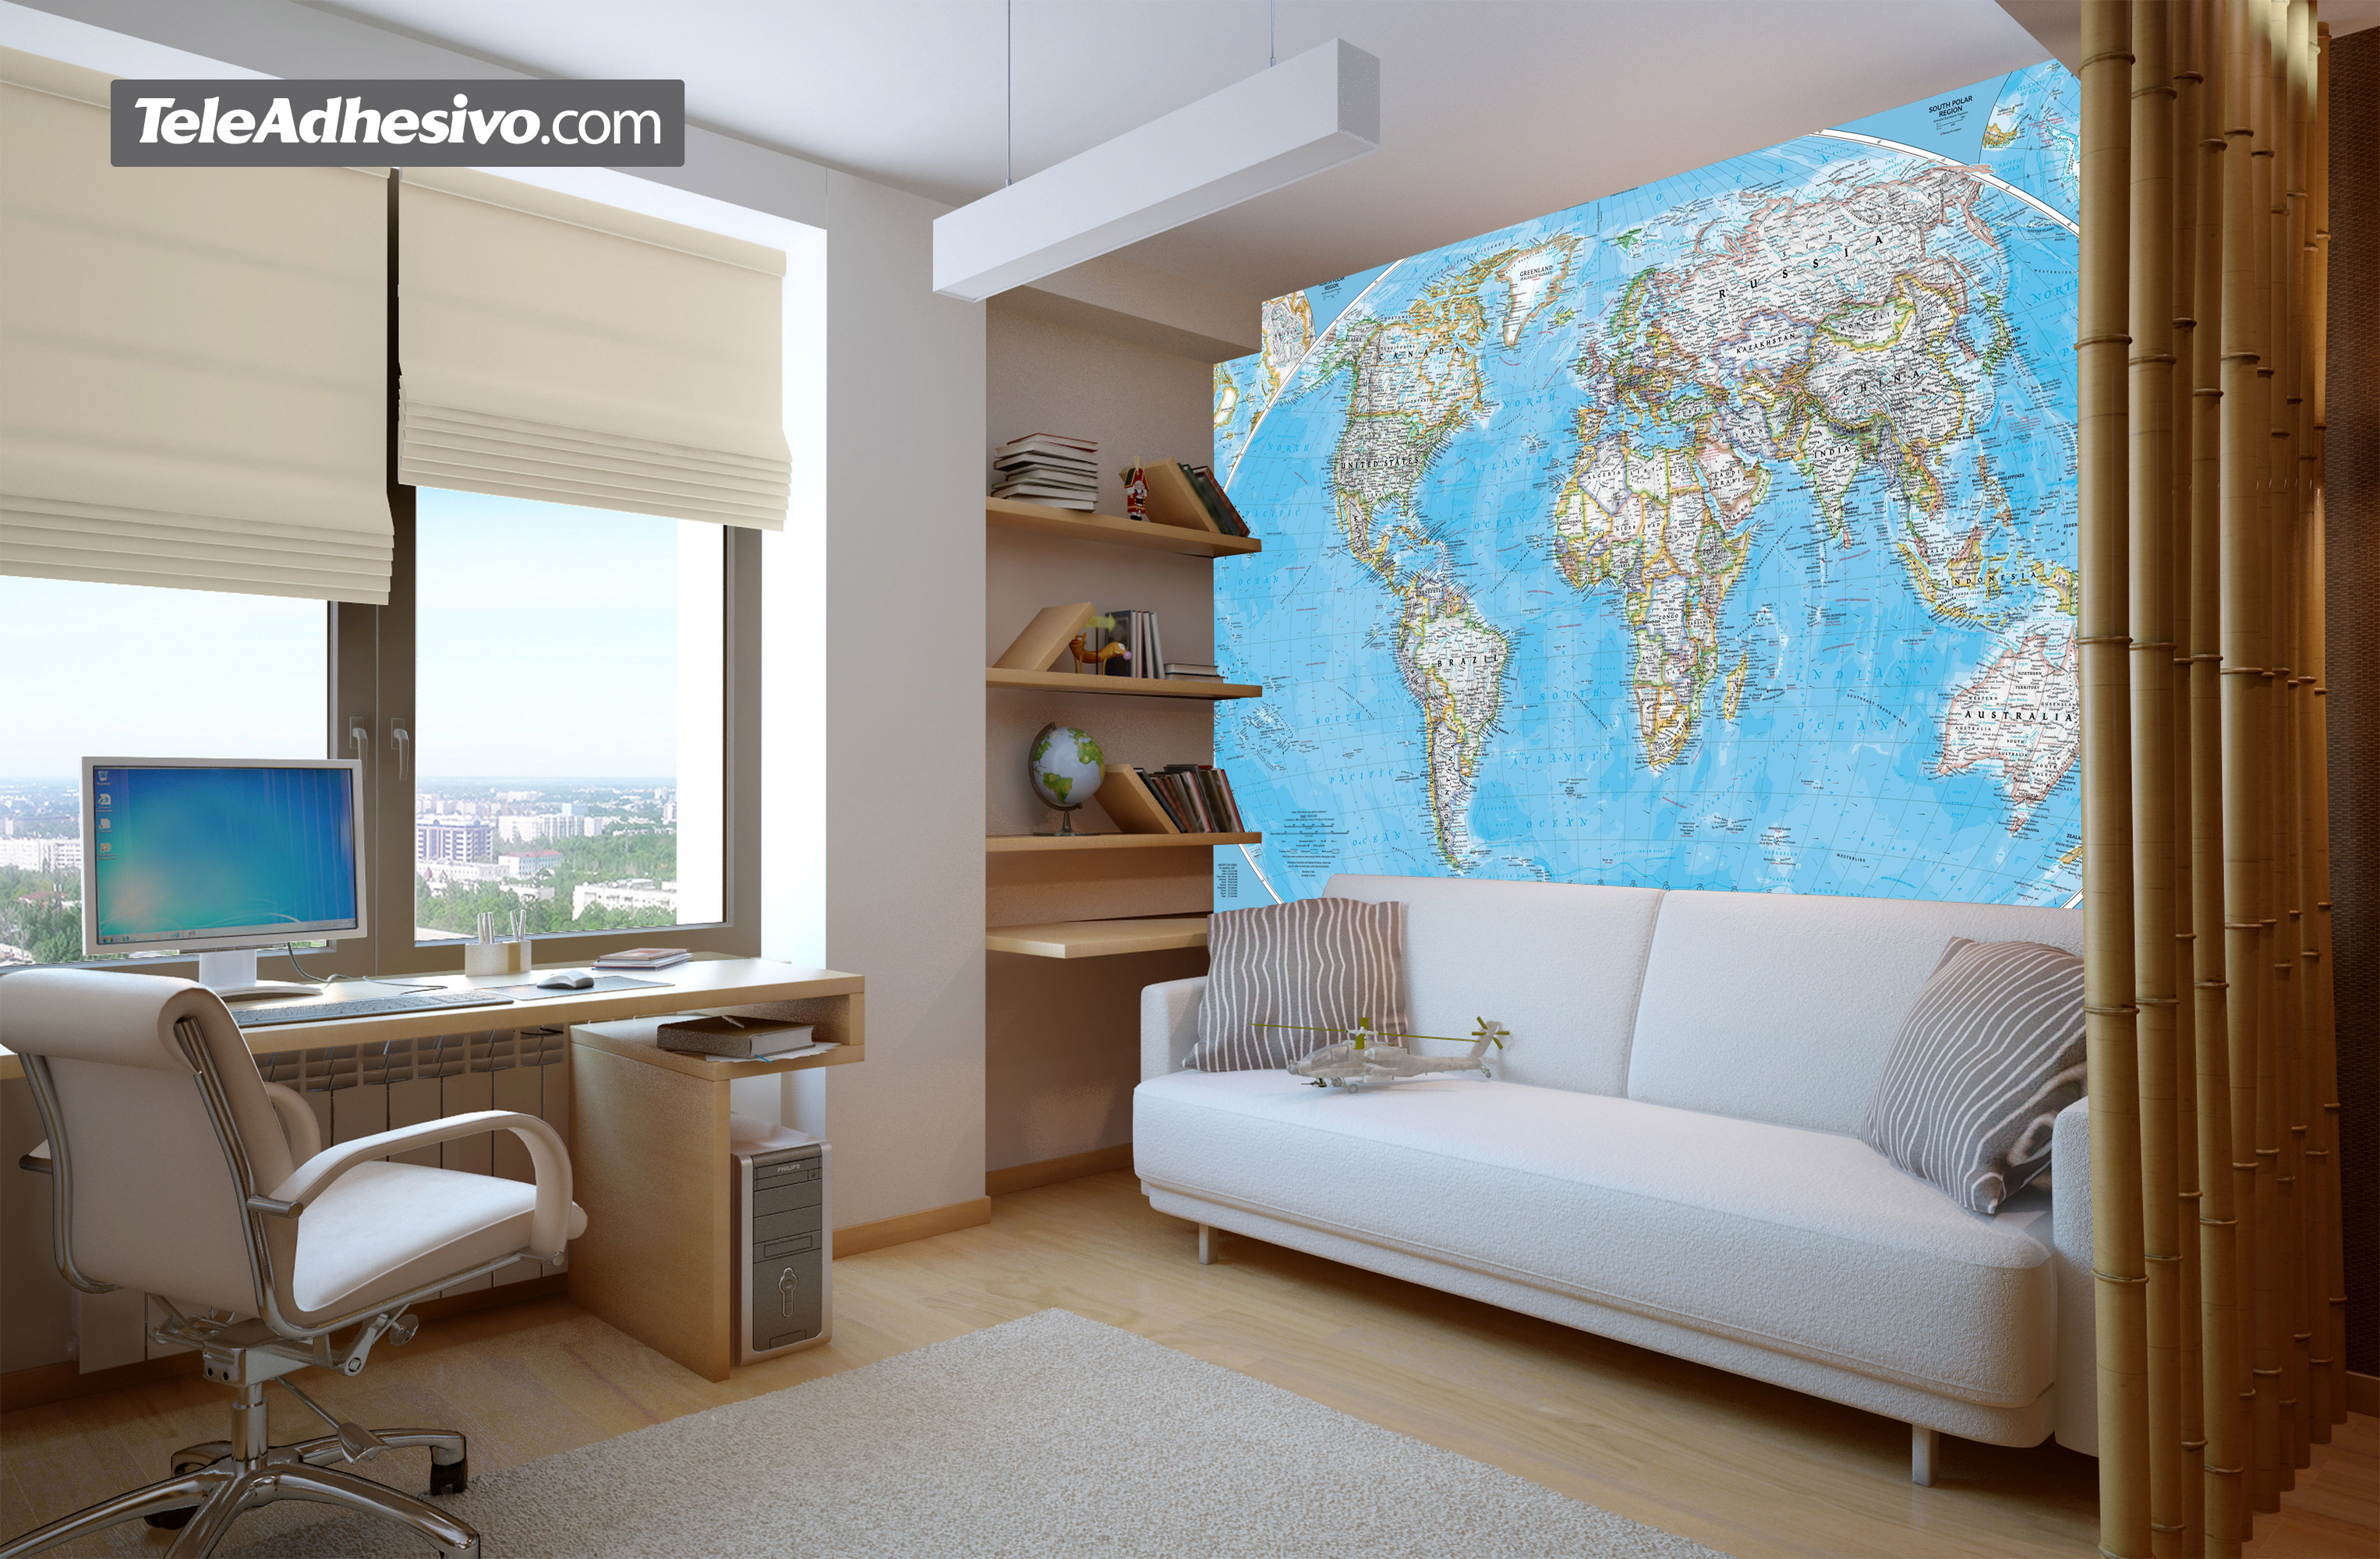 Fototapeten: Weltpolitische Weltkarte